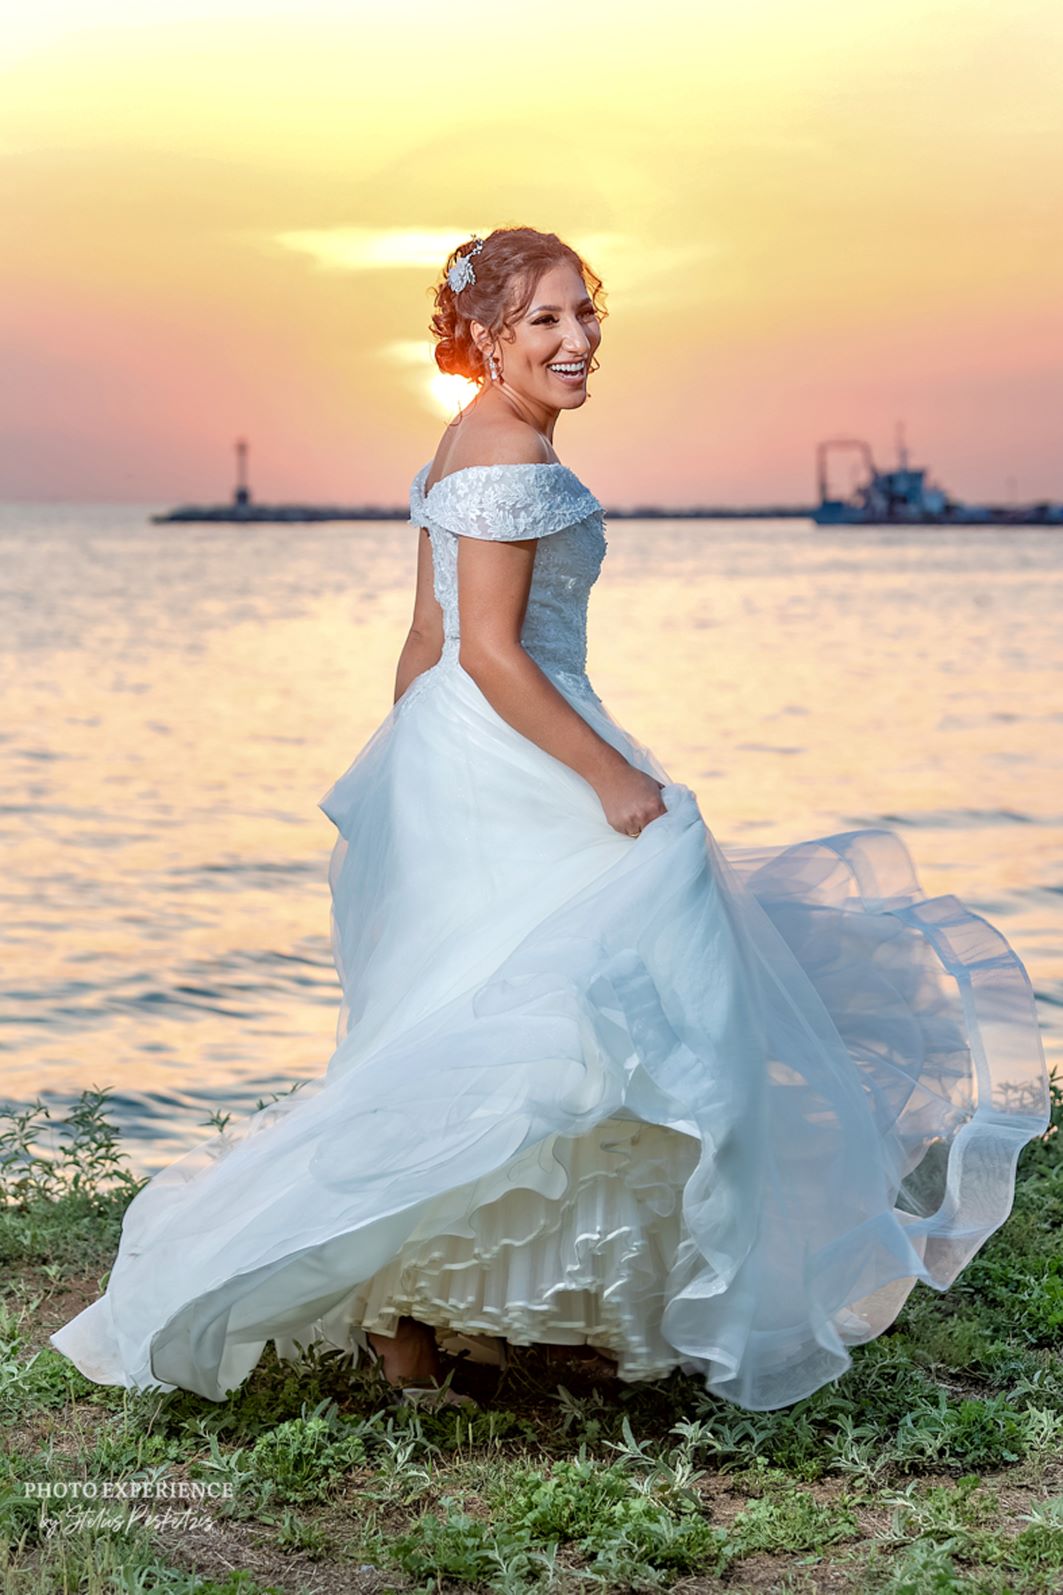 Νίκος & Ελένη - Θεσσαλονίκη : Real Wedding by Photo Experience Stelios Pesketzis